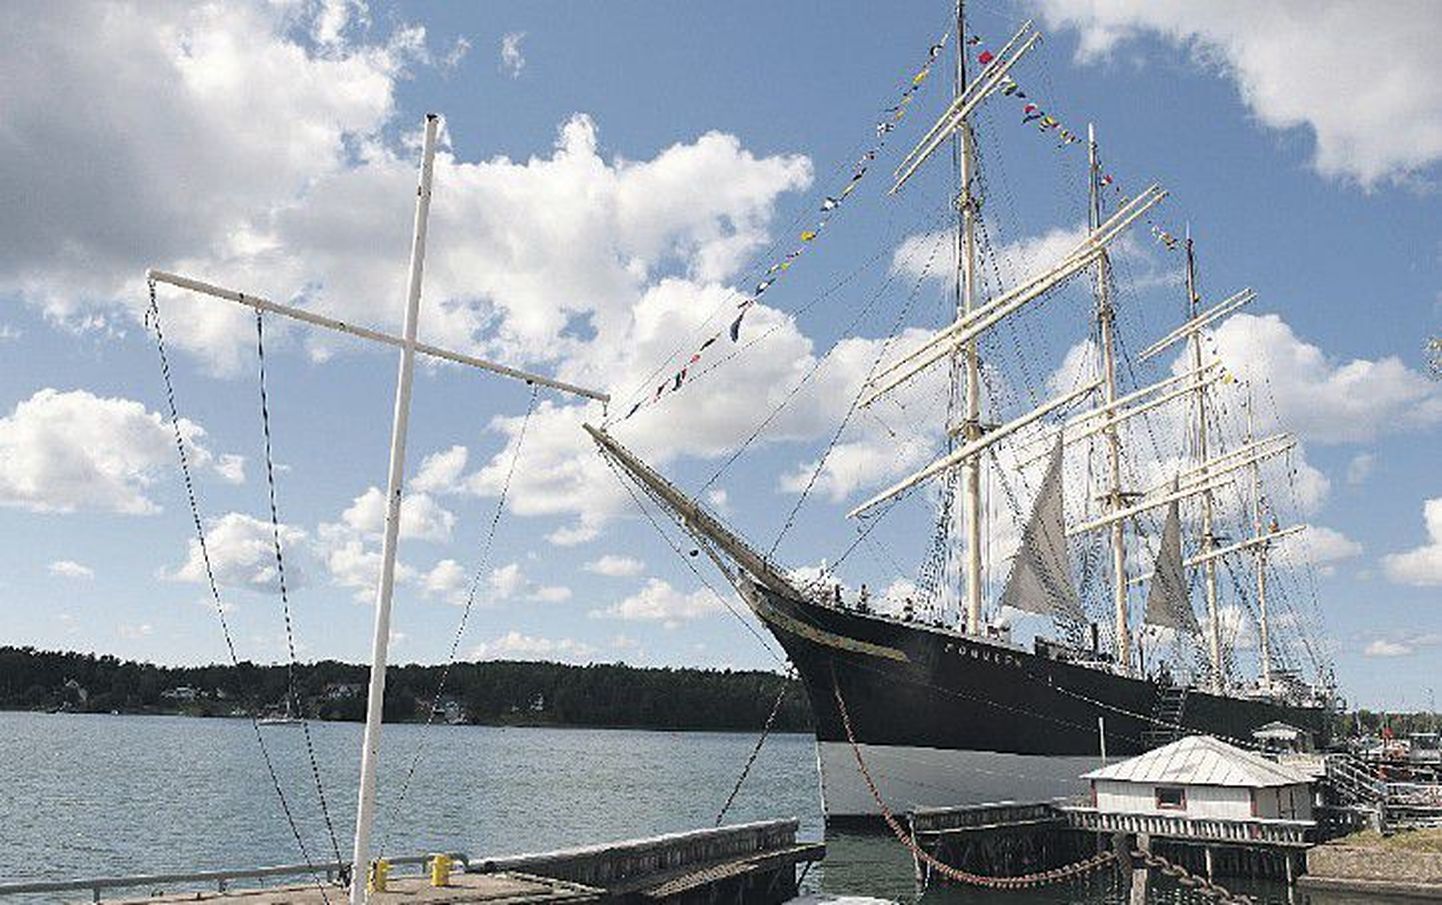 Музейный корабль Pommern — одна из главных достопримечательностей Мариехамна.